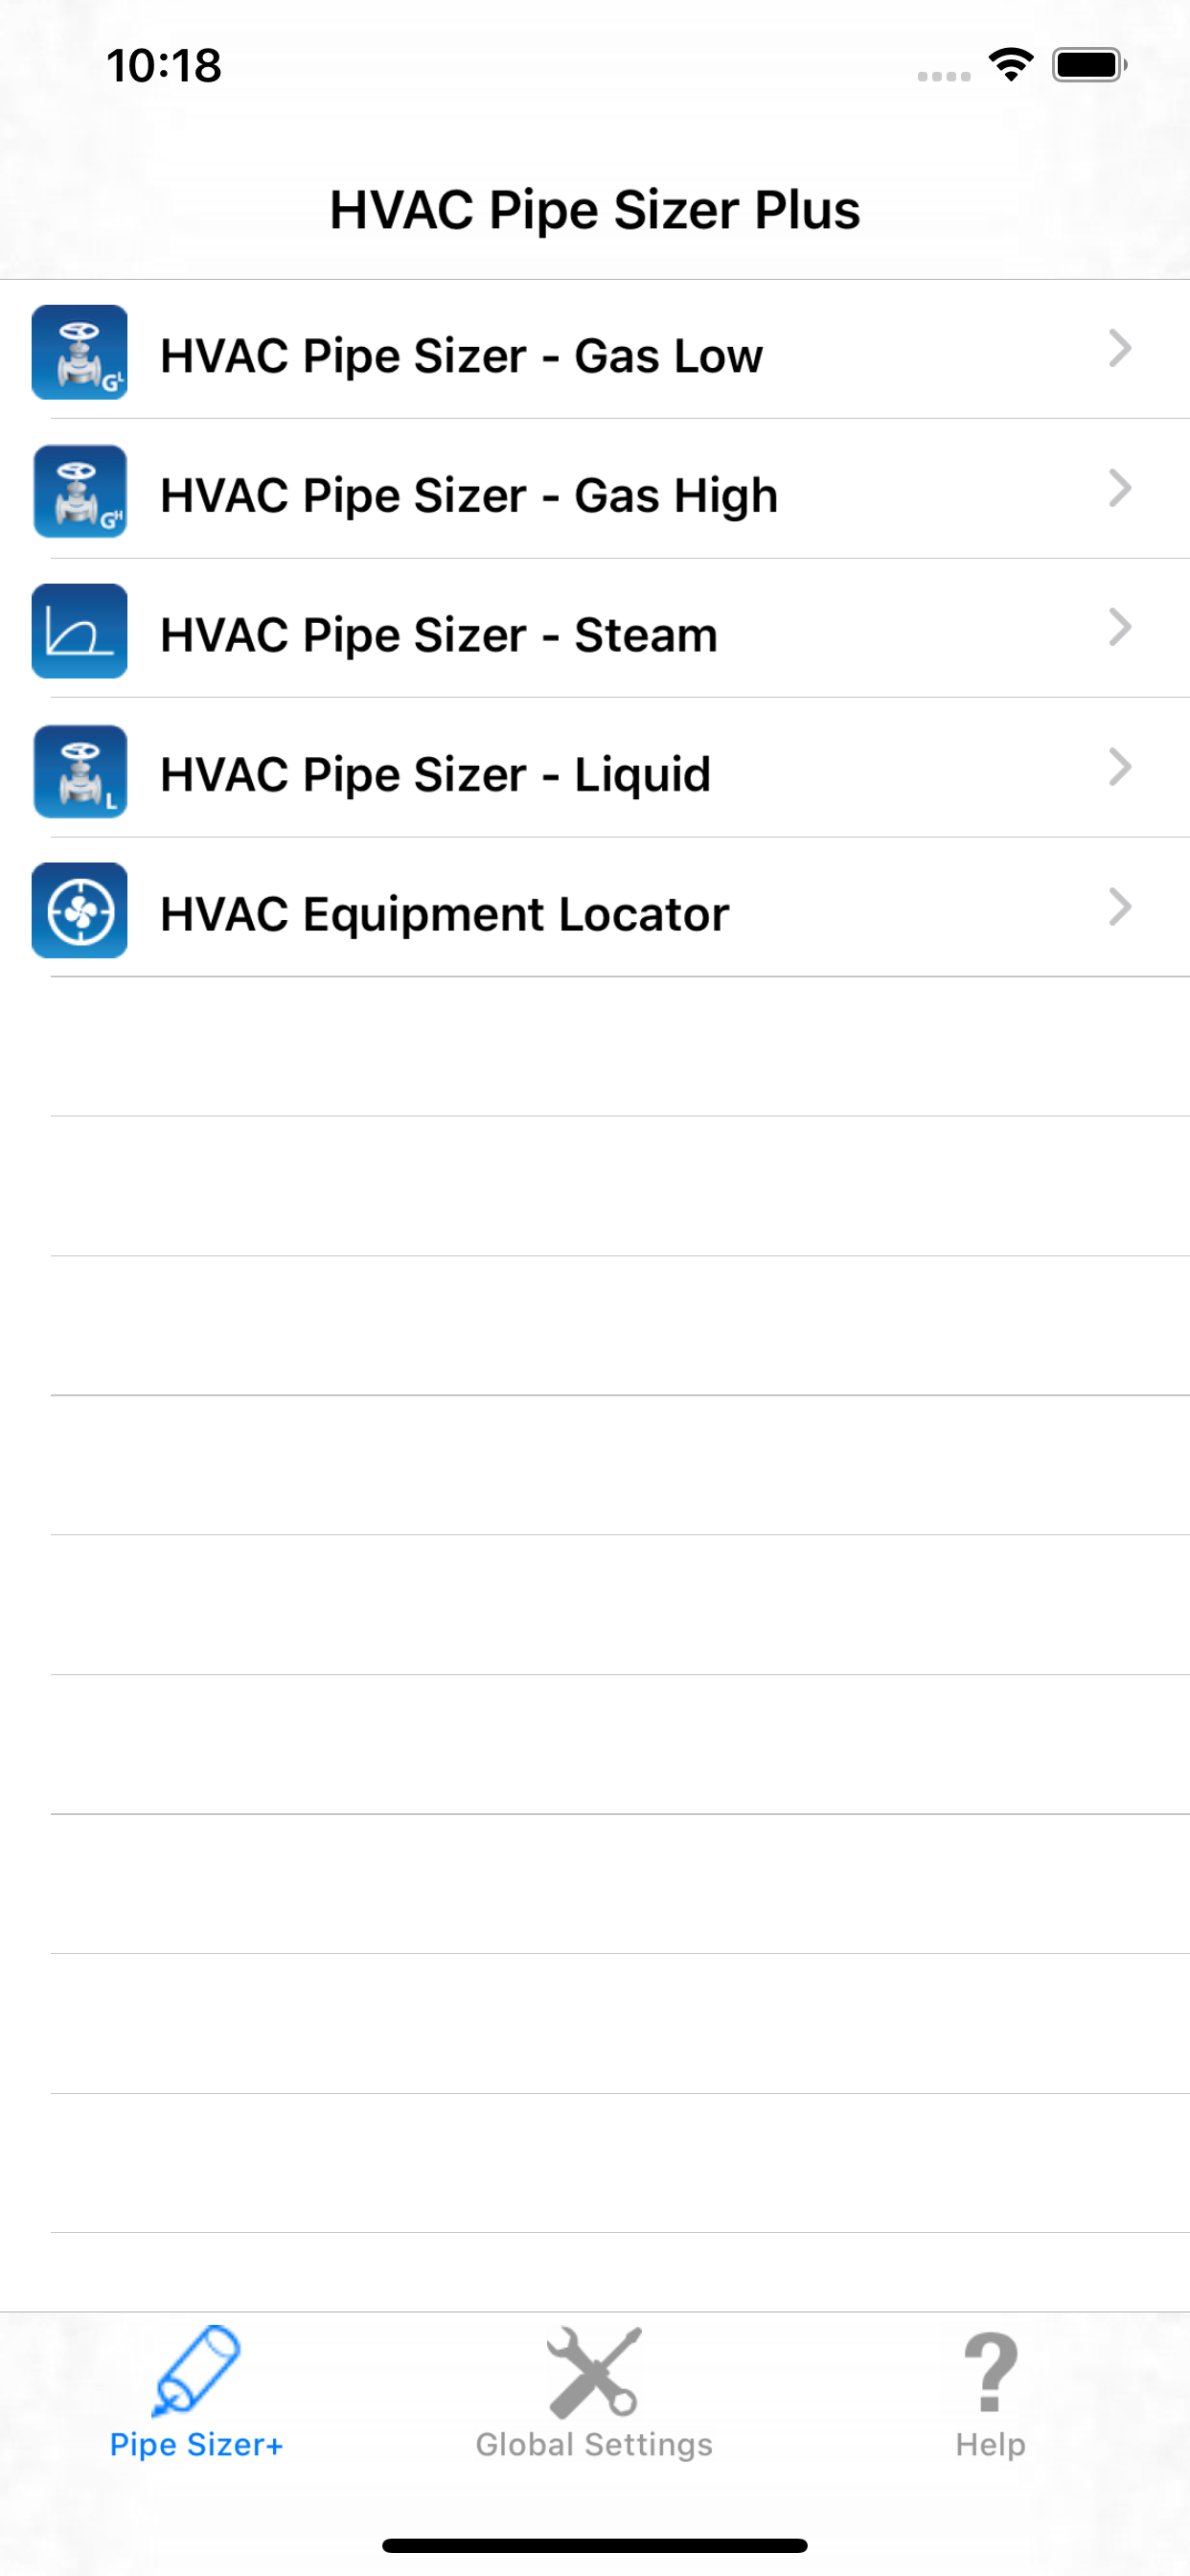 HVAC Pipe Sizer Plus App